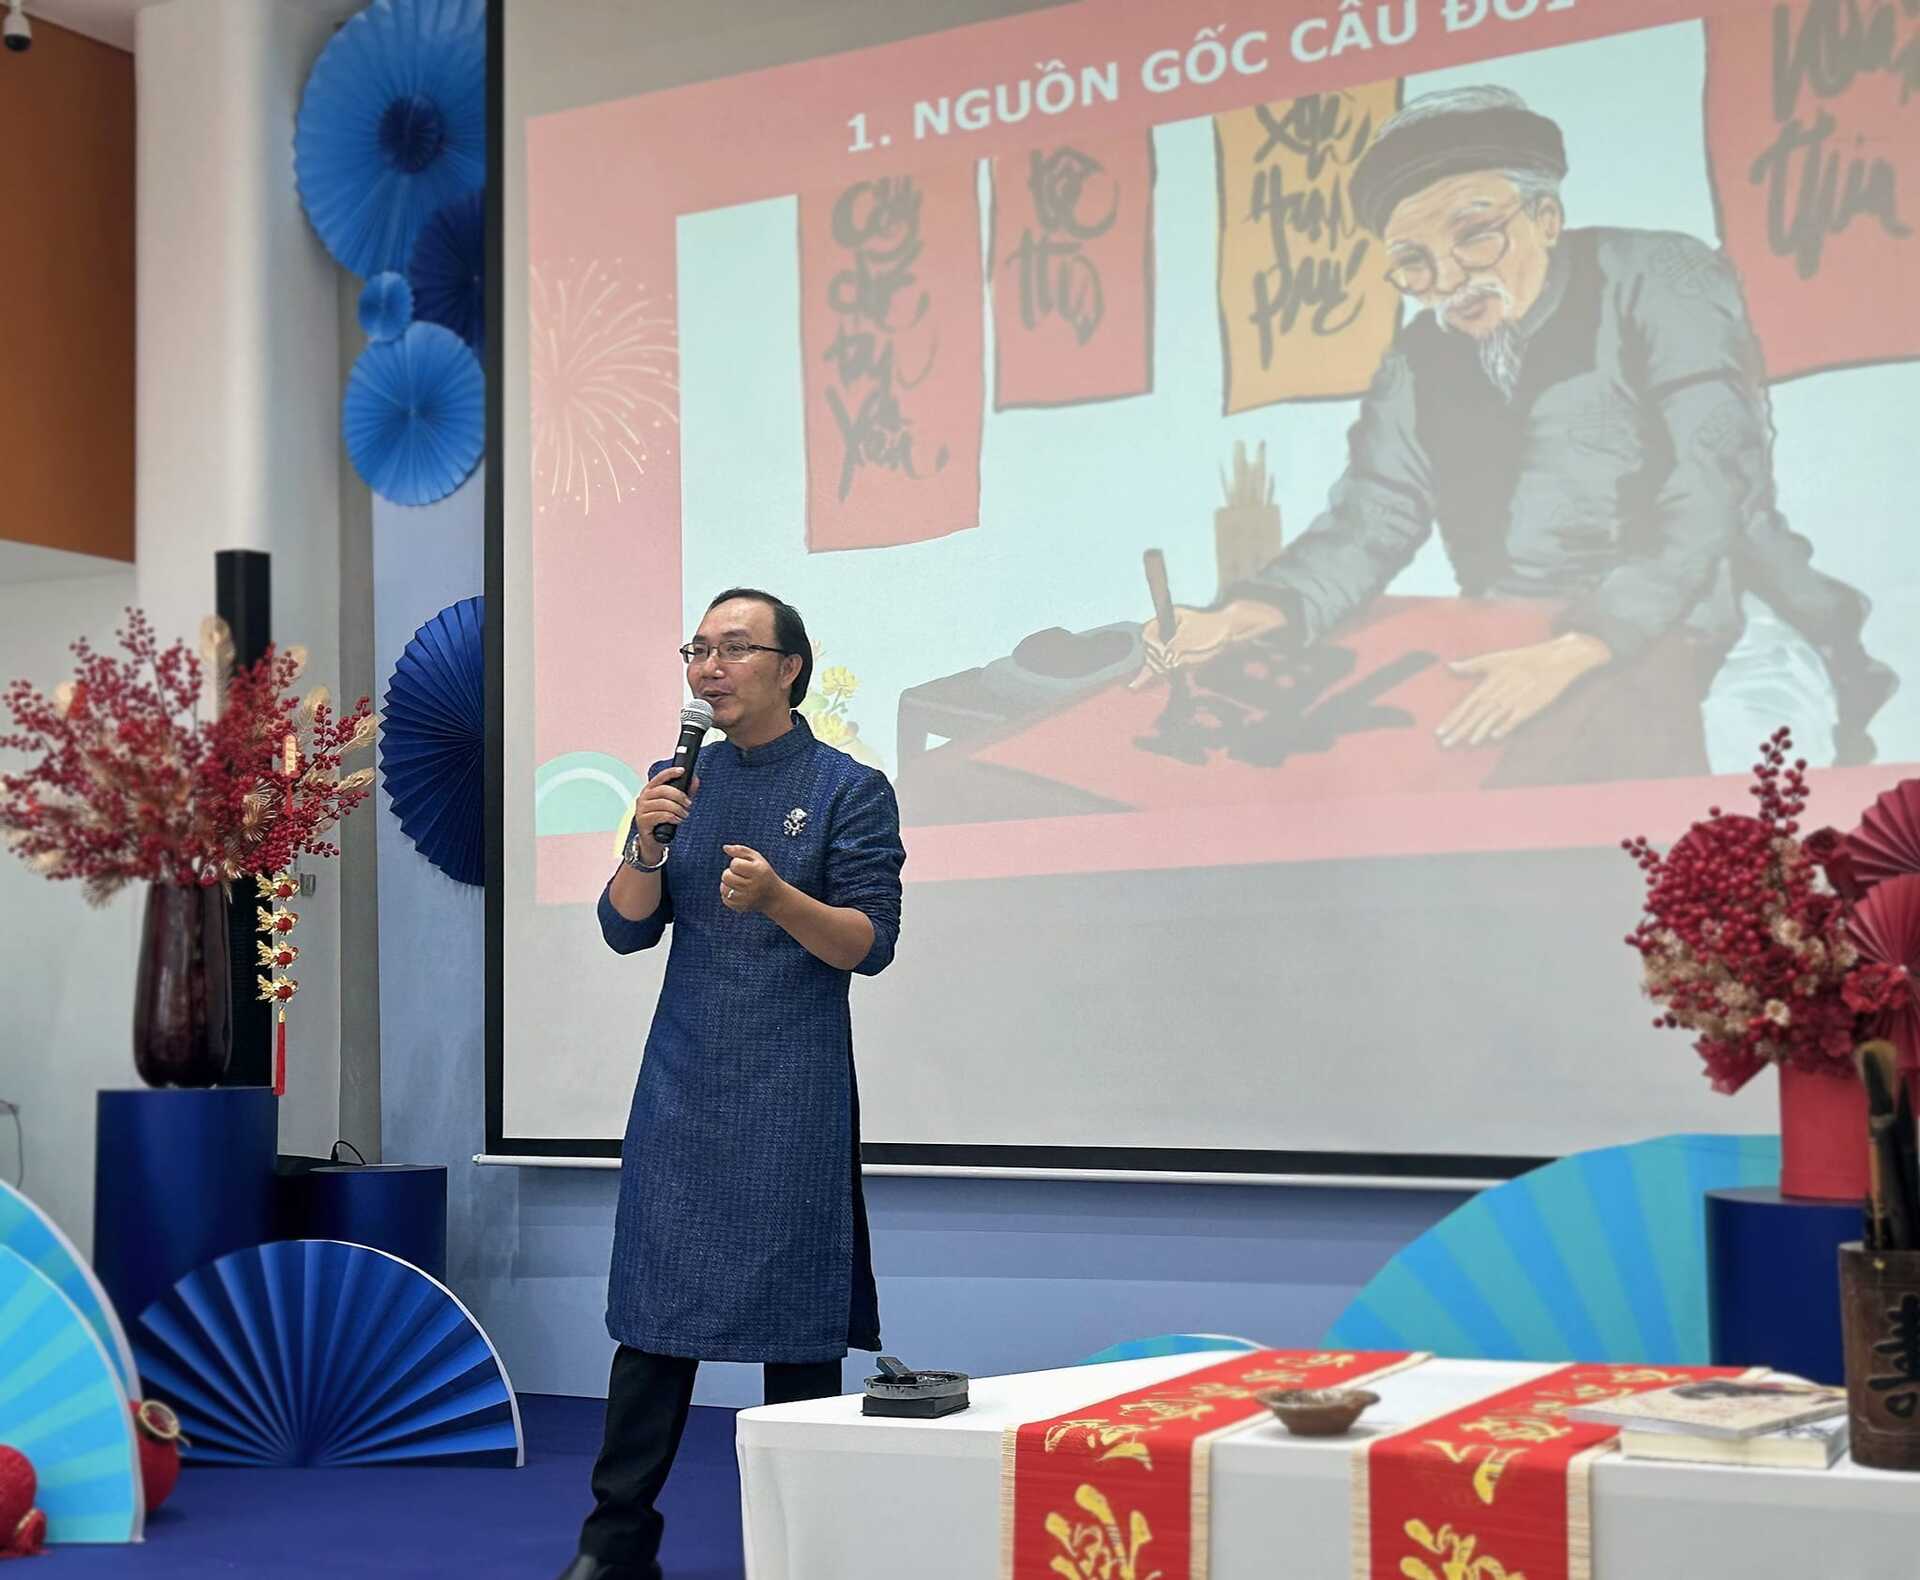 Thạc sĩ văn hóa học Nguyễn Hiếu Tín trong một hoạt động nói về văn hóa Tết xưa